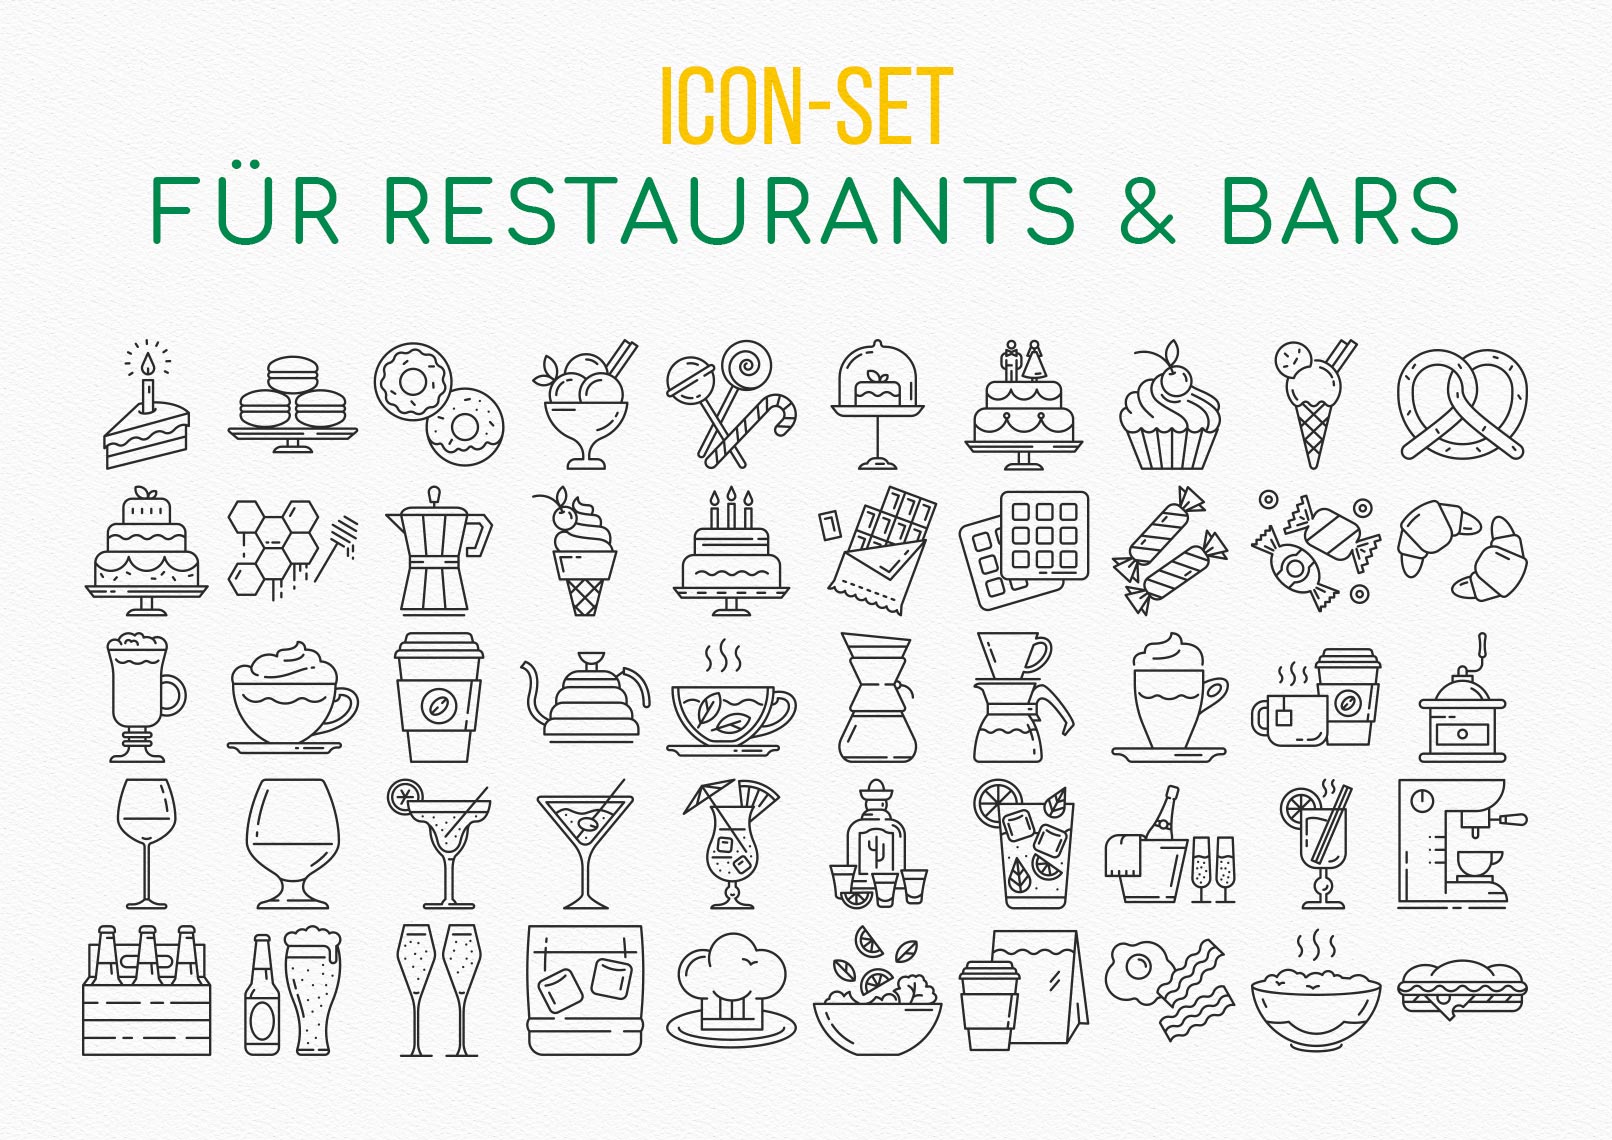 Icons zu den Themen Food und Essen, Drinks und Getränke, Restaurants und Bars